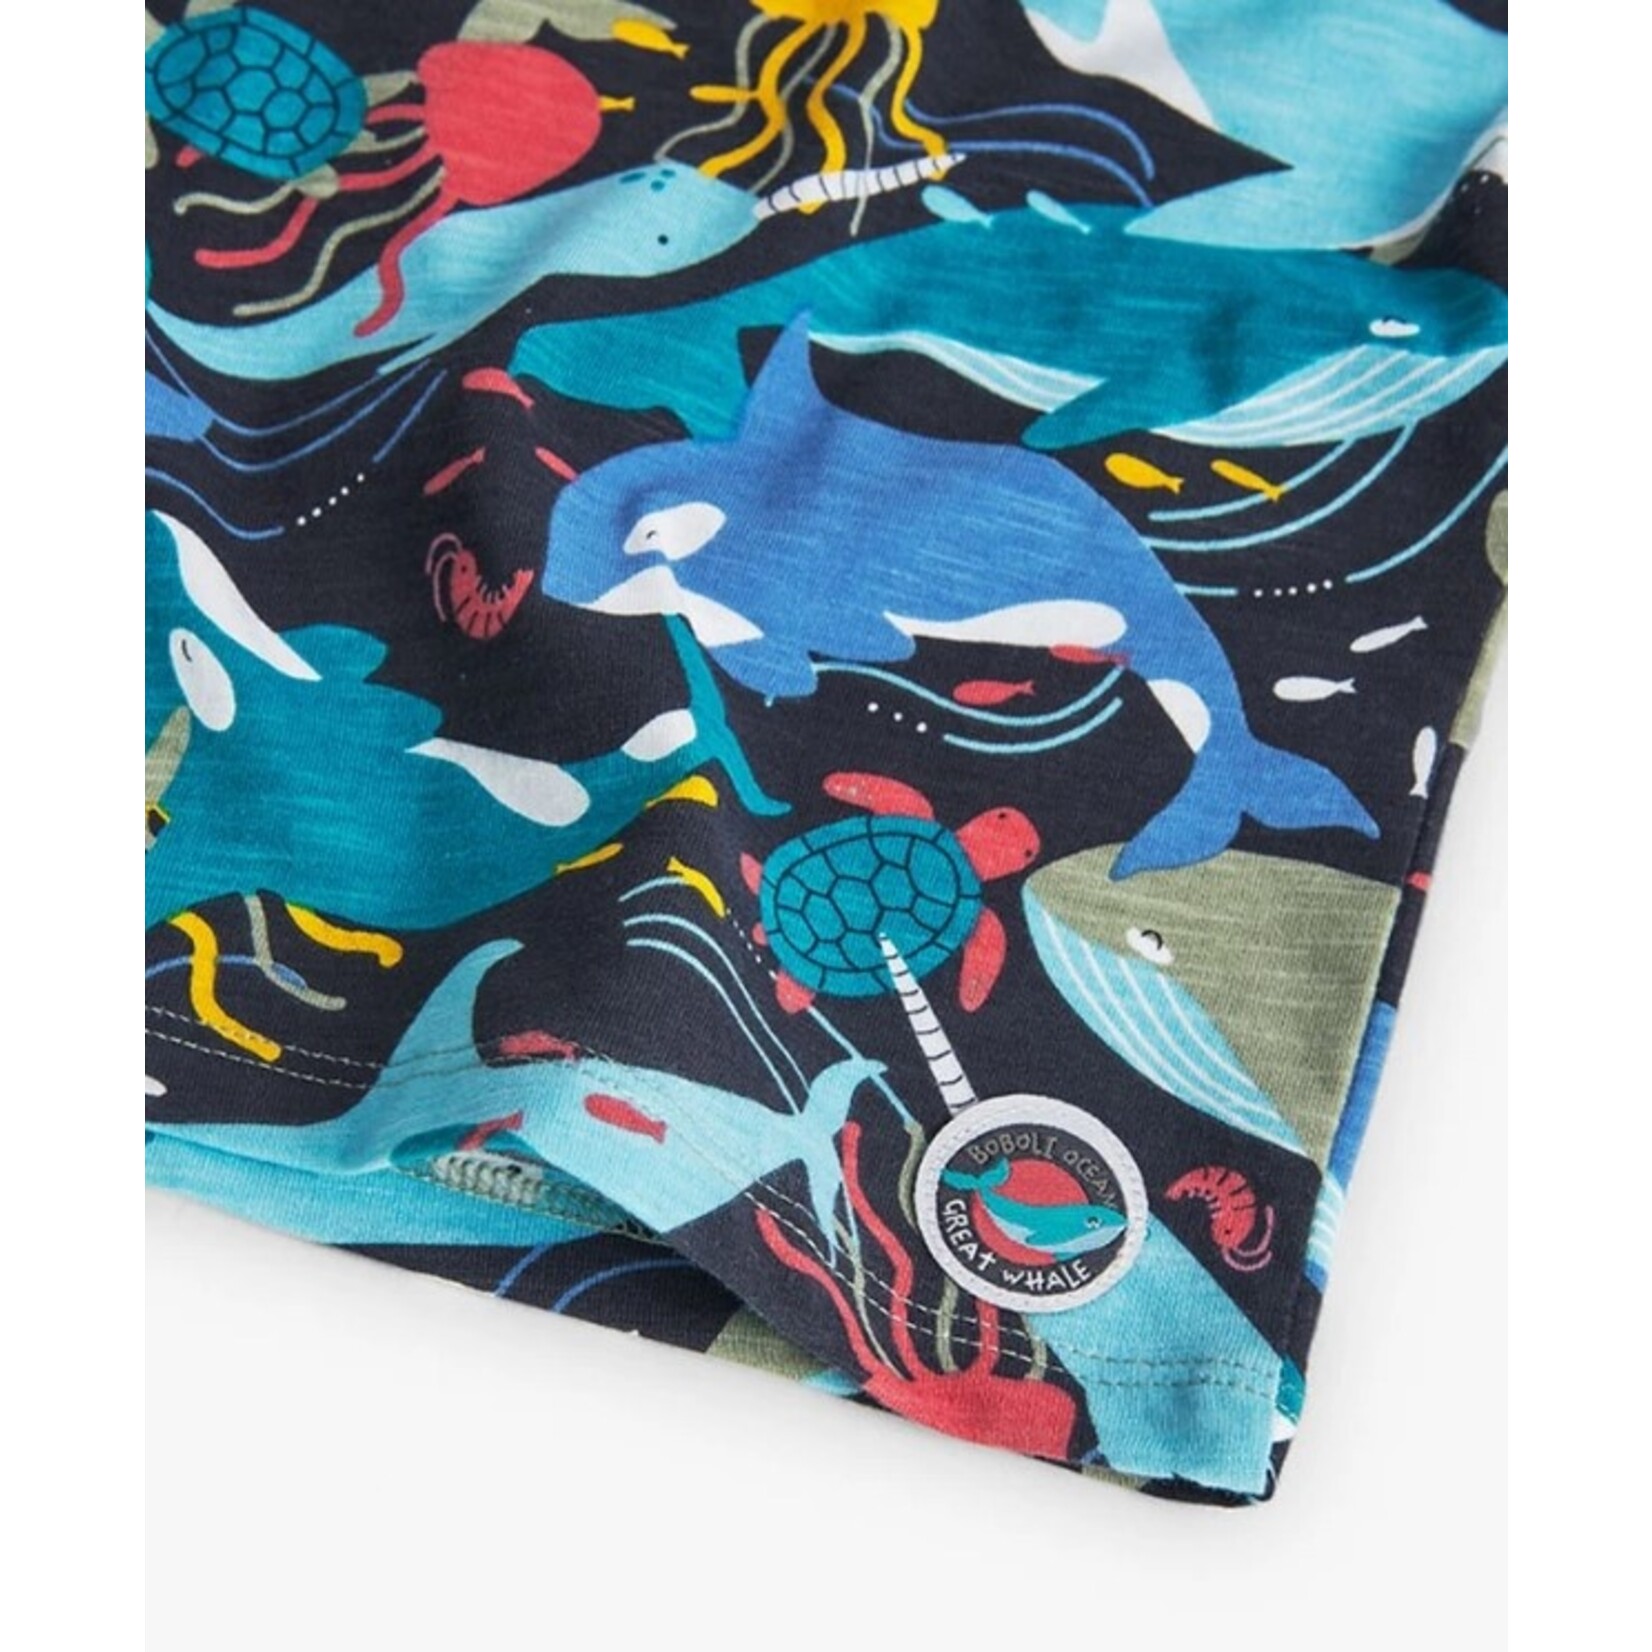 Boboli BOBOLI - T-shirt à manches courtes avec imprimé d'animaux marins mutlcolores